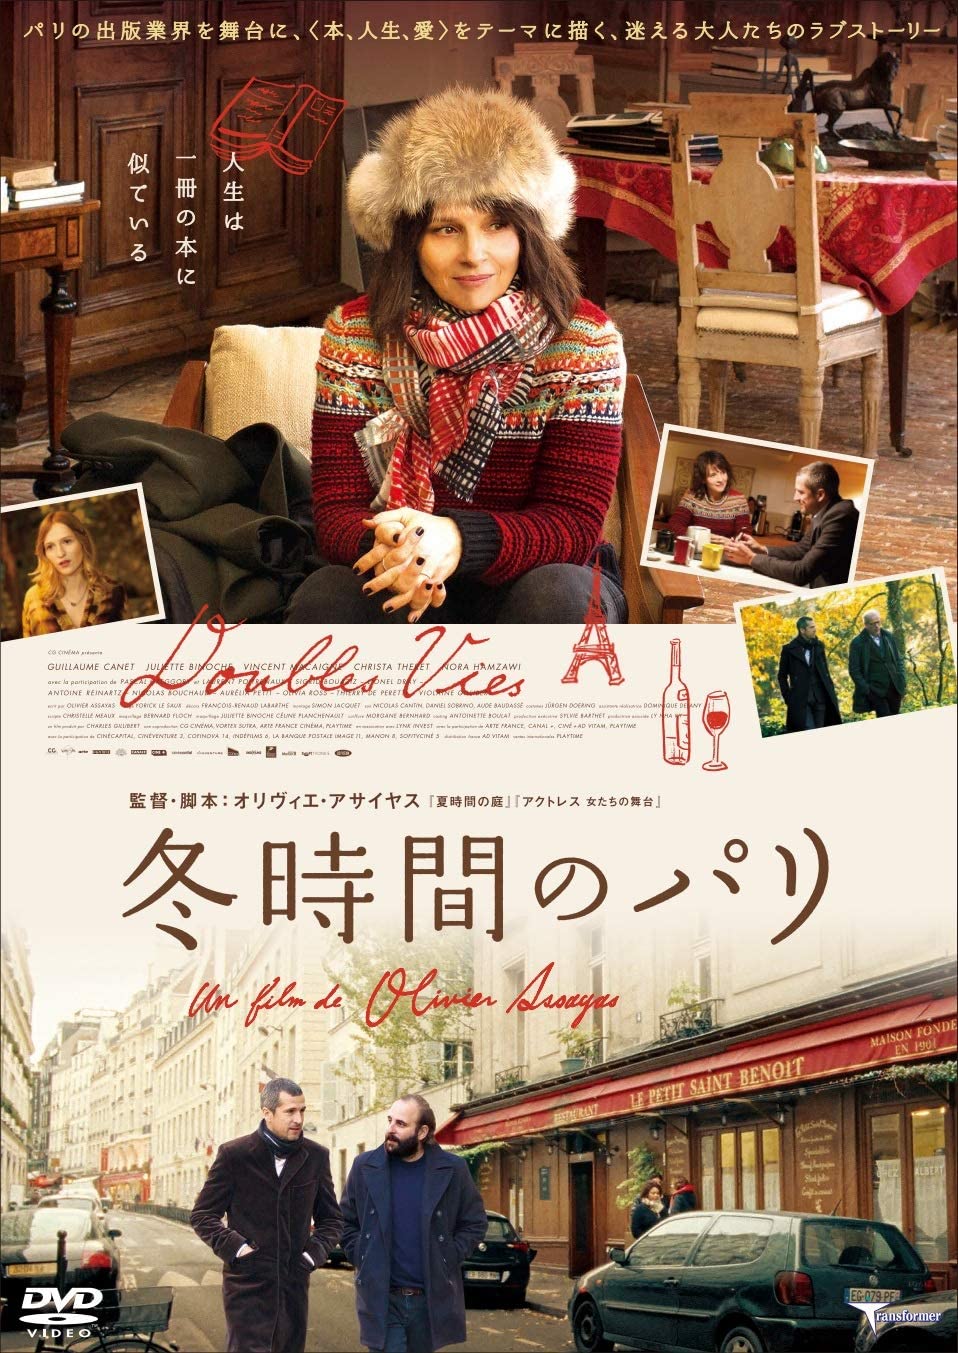 [DVD] 冬時間のパリ